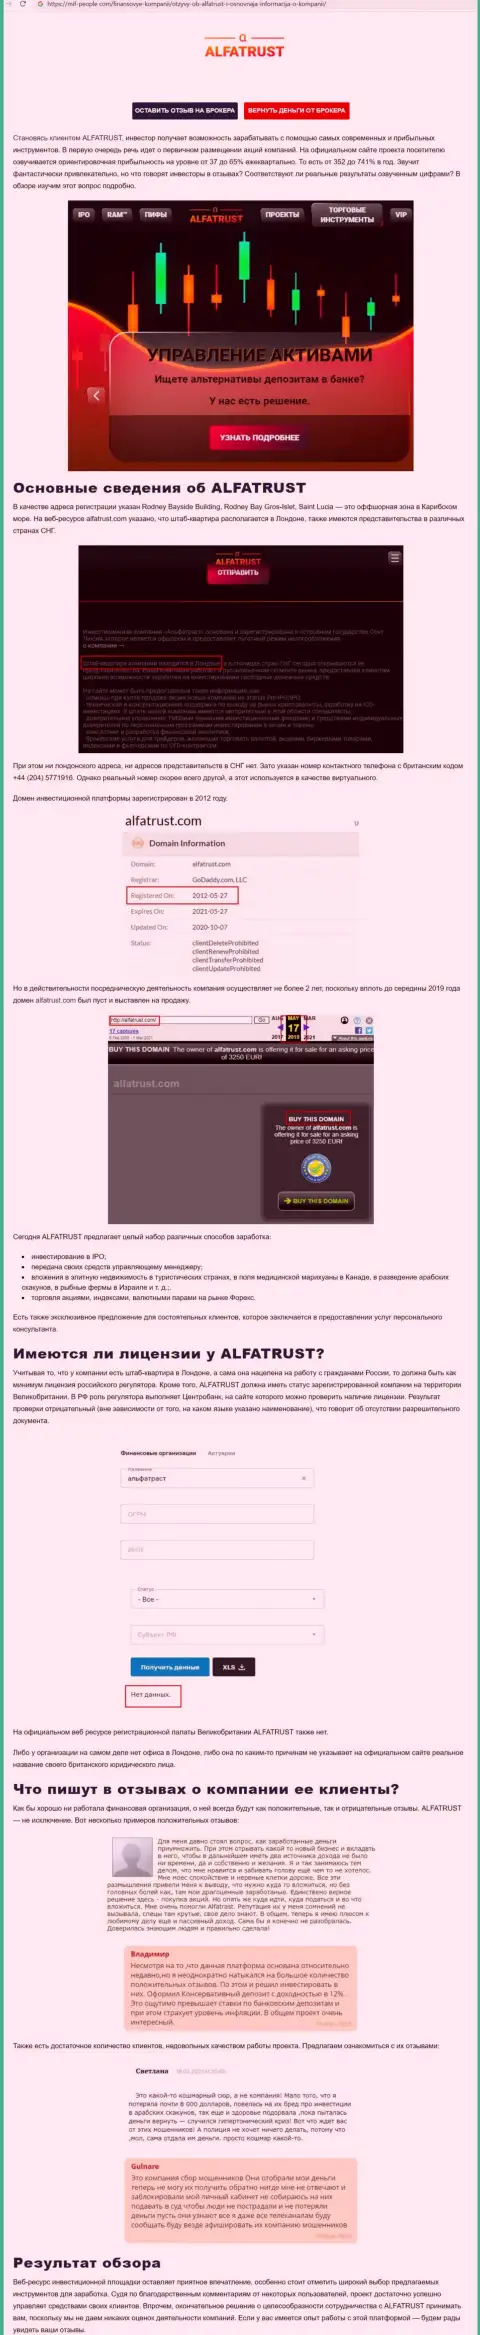 Интернет-портал миф-пеопле ком опубликовал информацию об ФОРЕКС дилере AlfaTrust